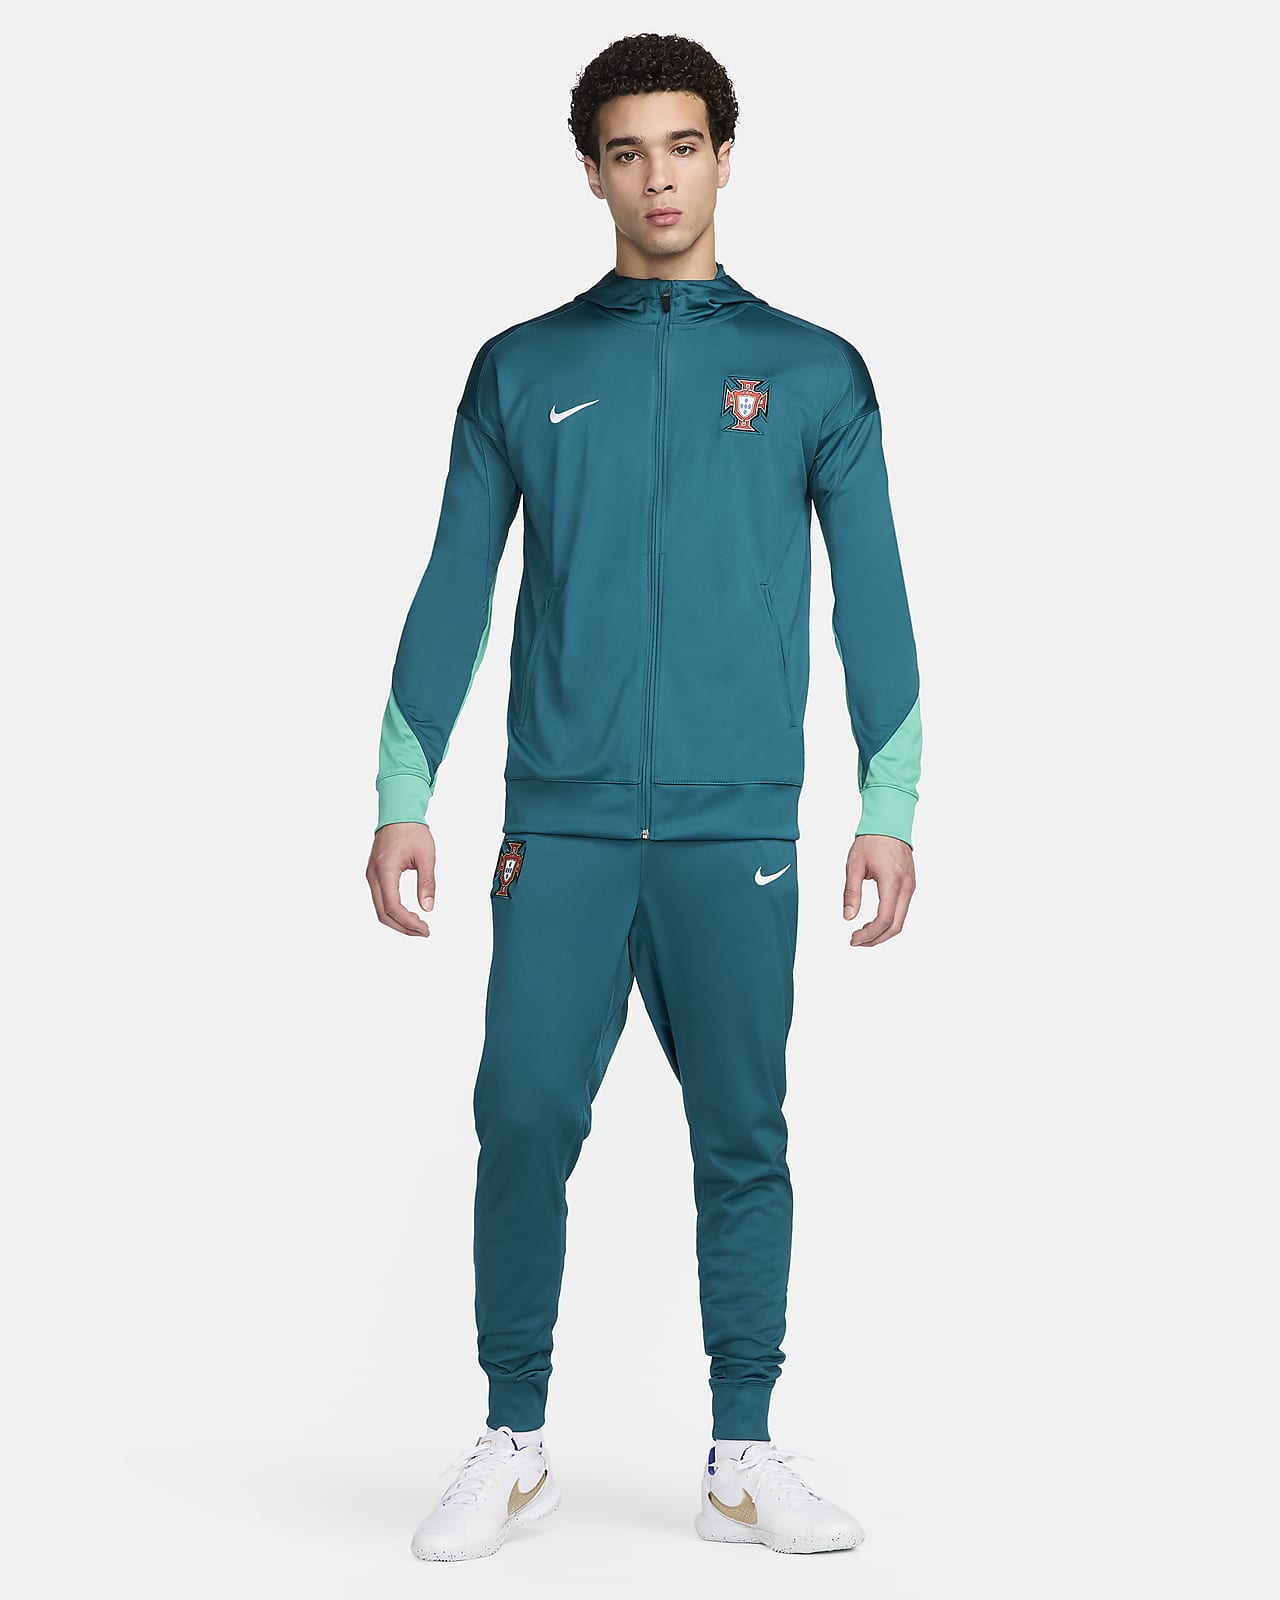 Portugal Strike Xandall de futbol de teixit Knit amb caputxa Nike Dri-FIT - Home